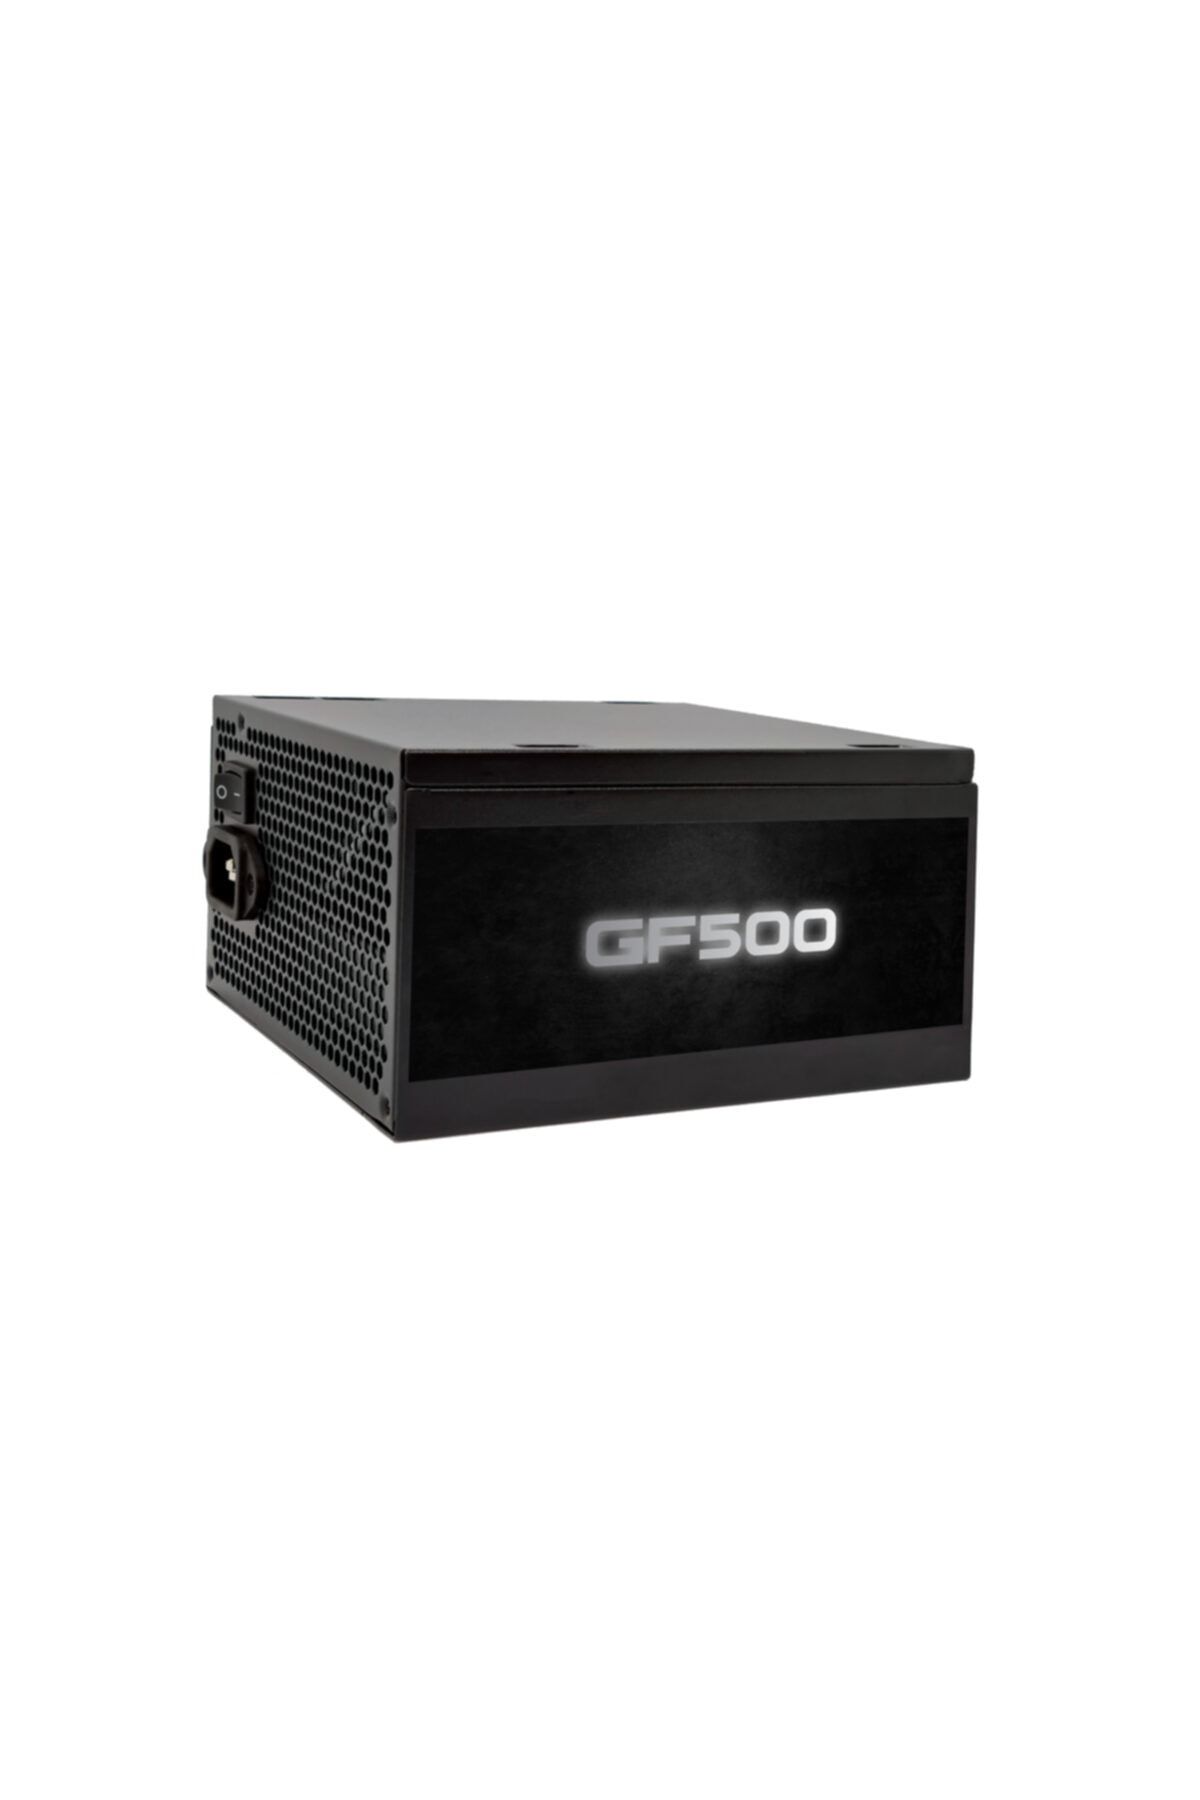 GAMEFORCE Gf500 500w 80+ Bronz Sertifikalı Güç Kaynağı